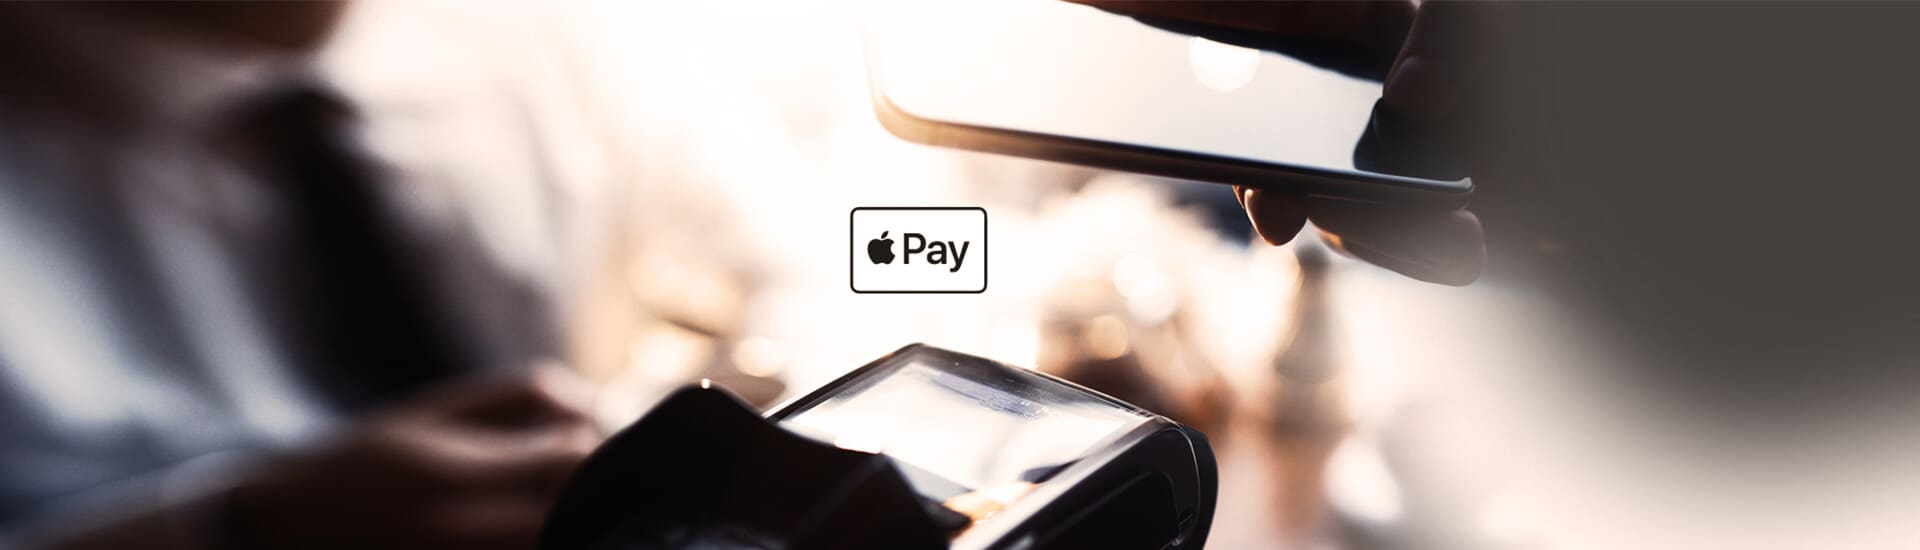 Bezahlen mit dem Iphone und der Apple Pay App